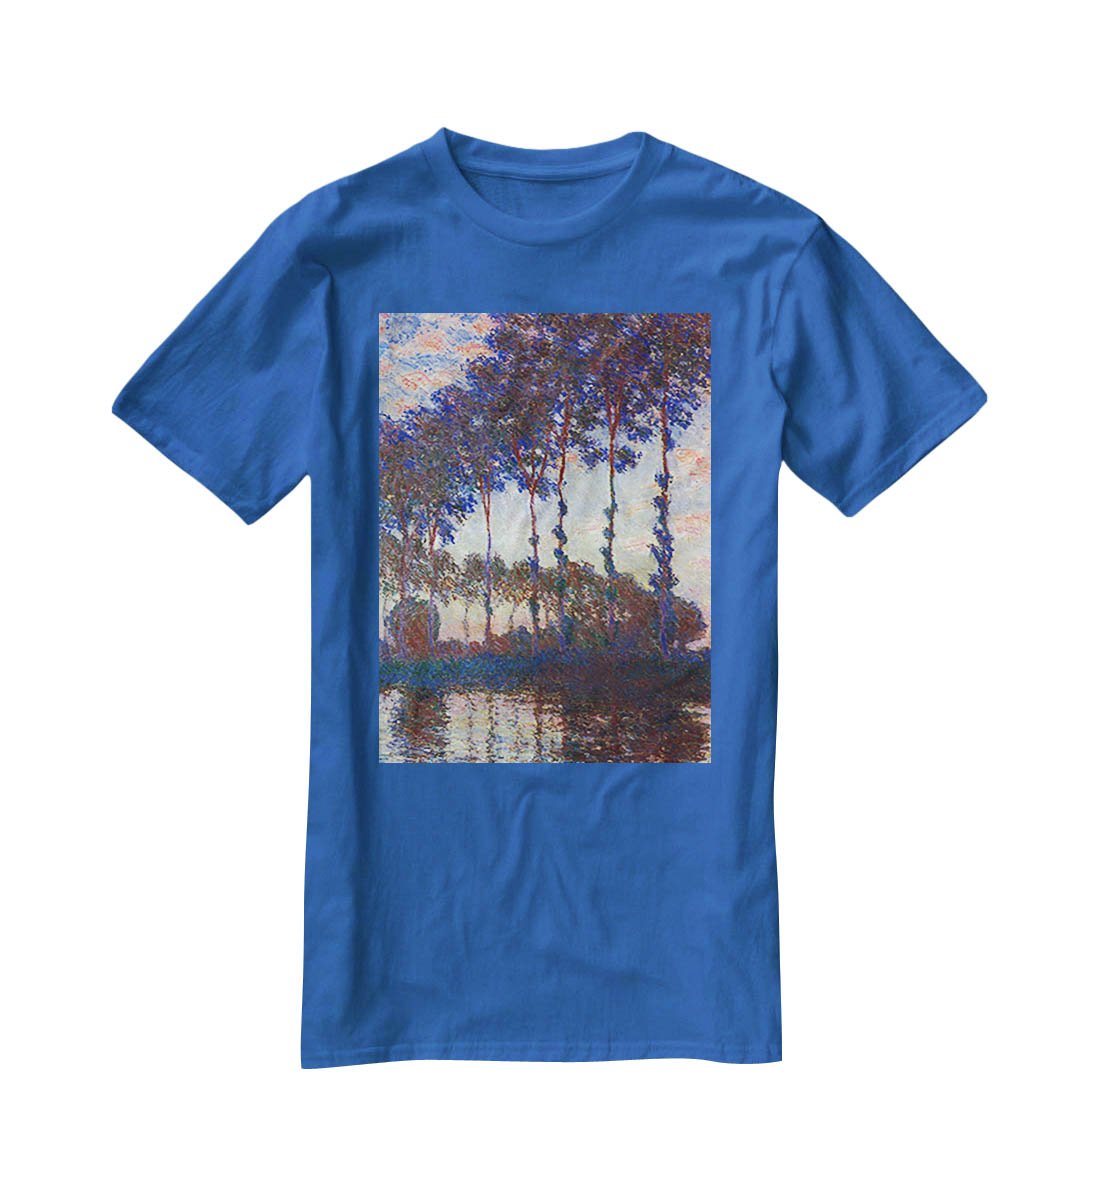 Poplars sunset by Monet T-Shirt - Canvas Art Rocks - 2